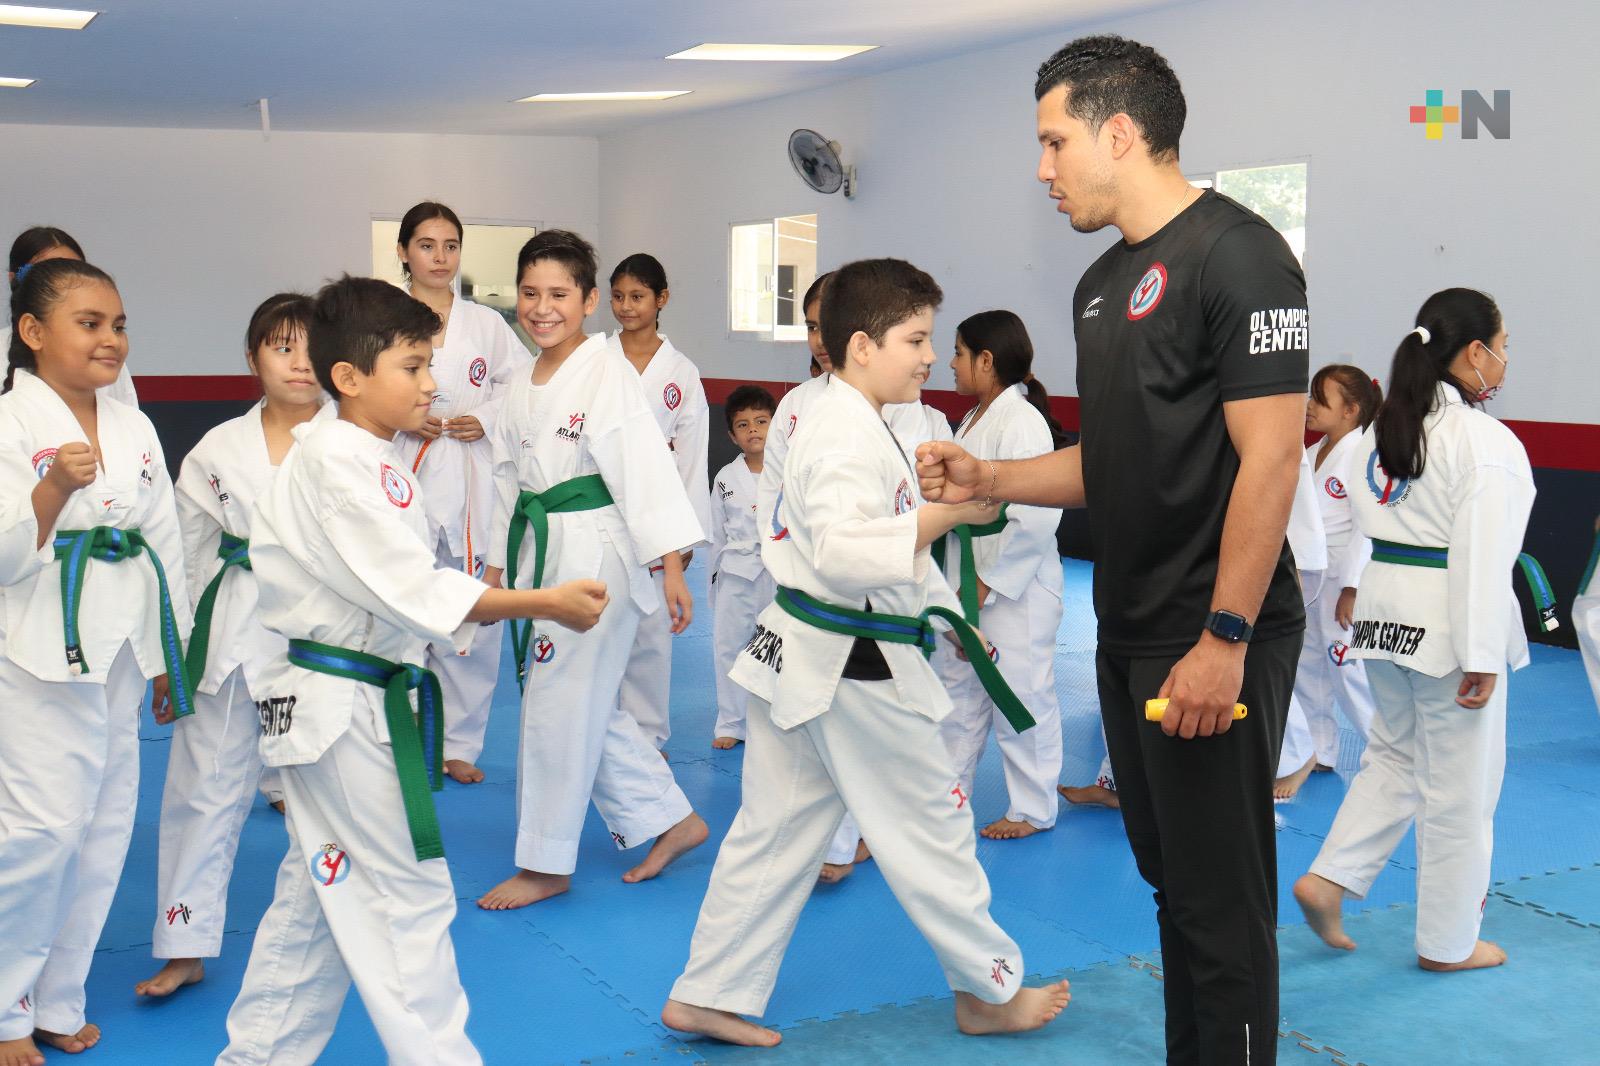 Realizan Master Class con Abel Mendoza en Atlantes Taekwondo Olympic Center